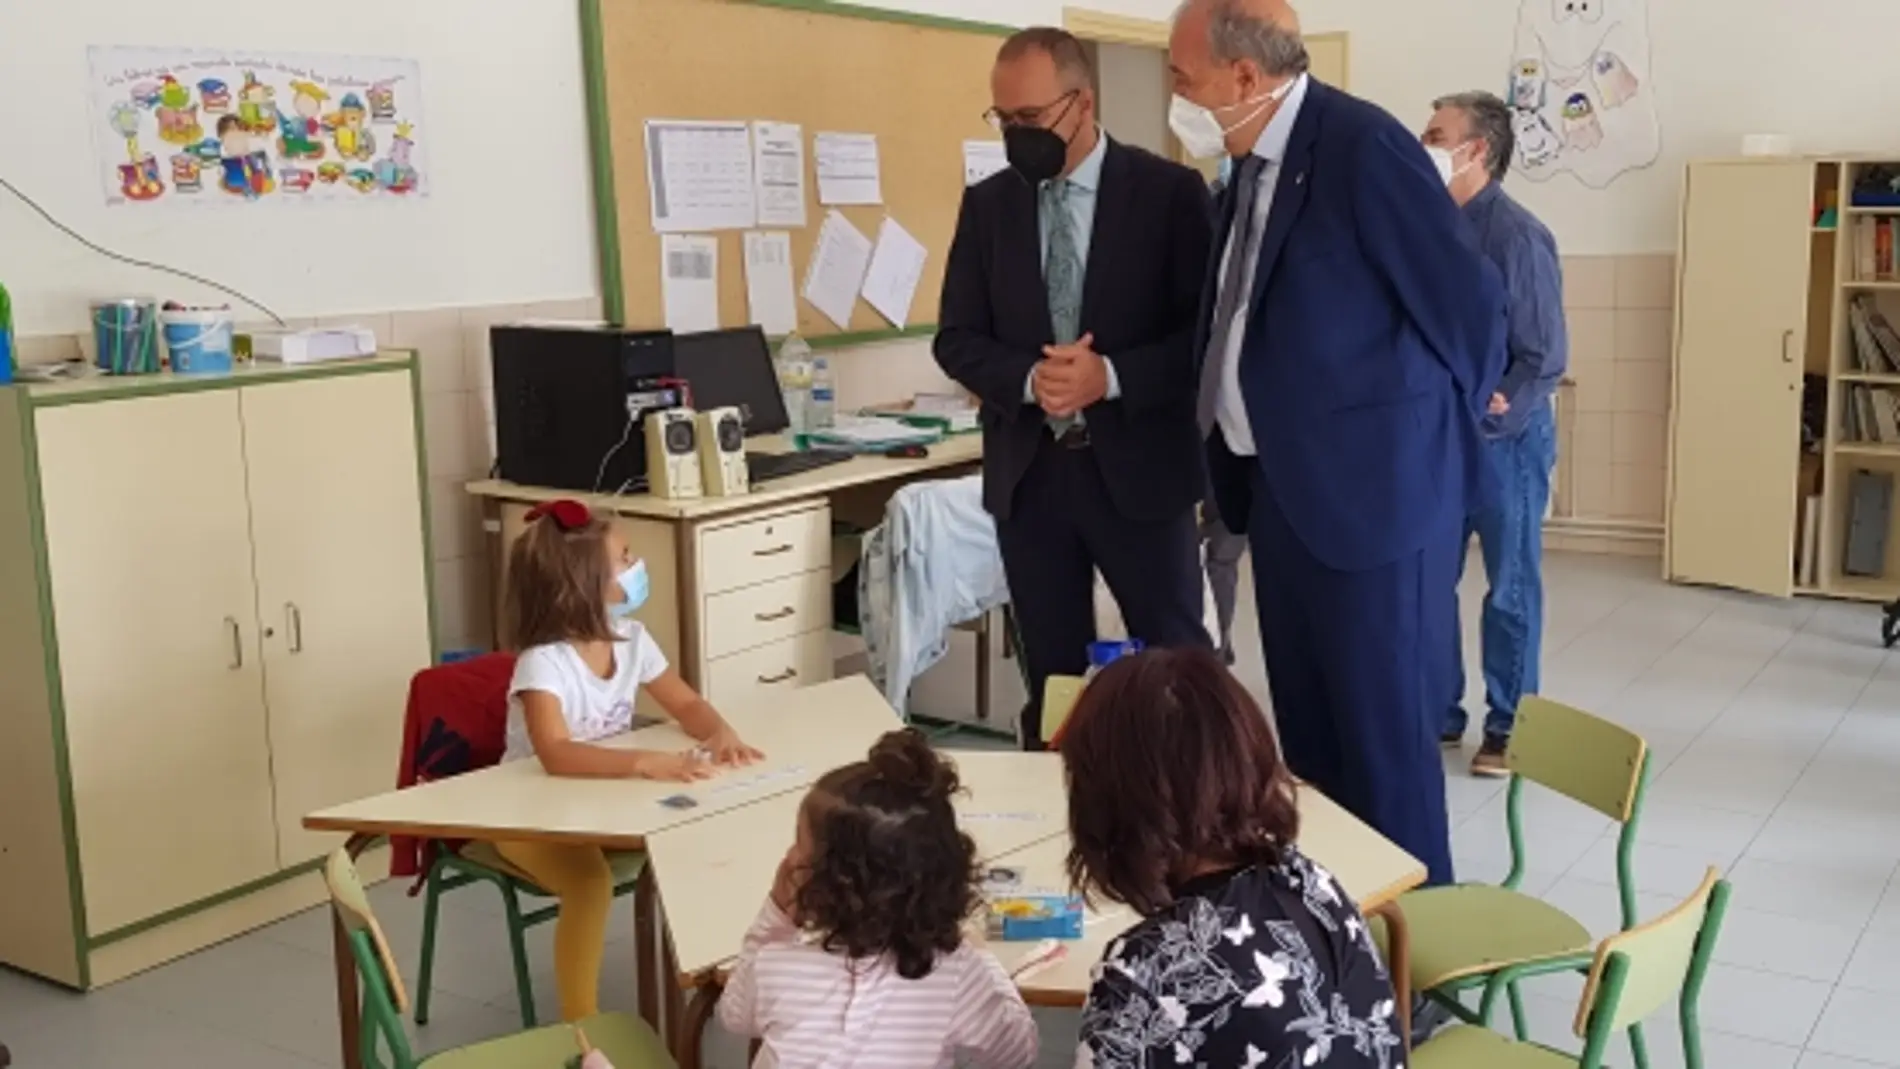 El consejero Faci, acompañado por el presidente de la DPT, Manuel Rando, visitan la escuela de Argente